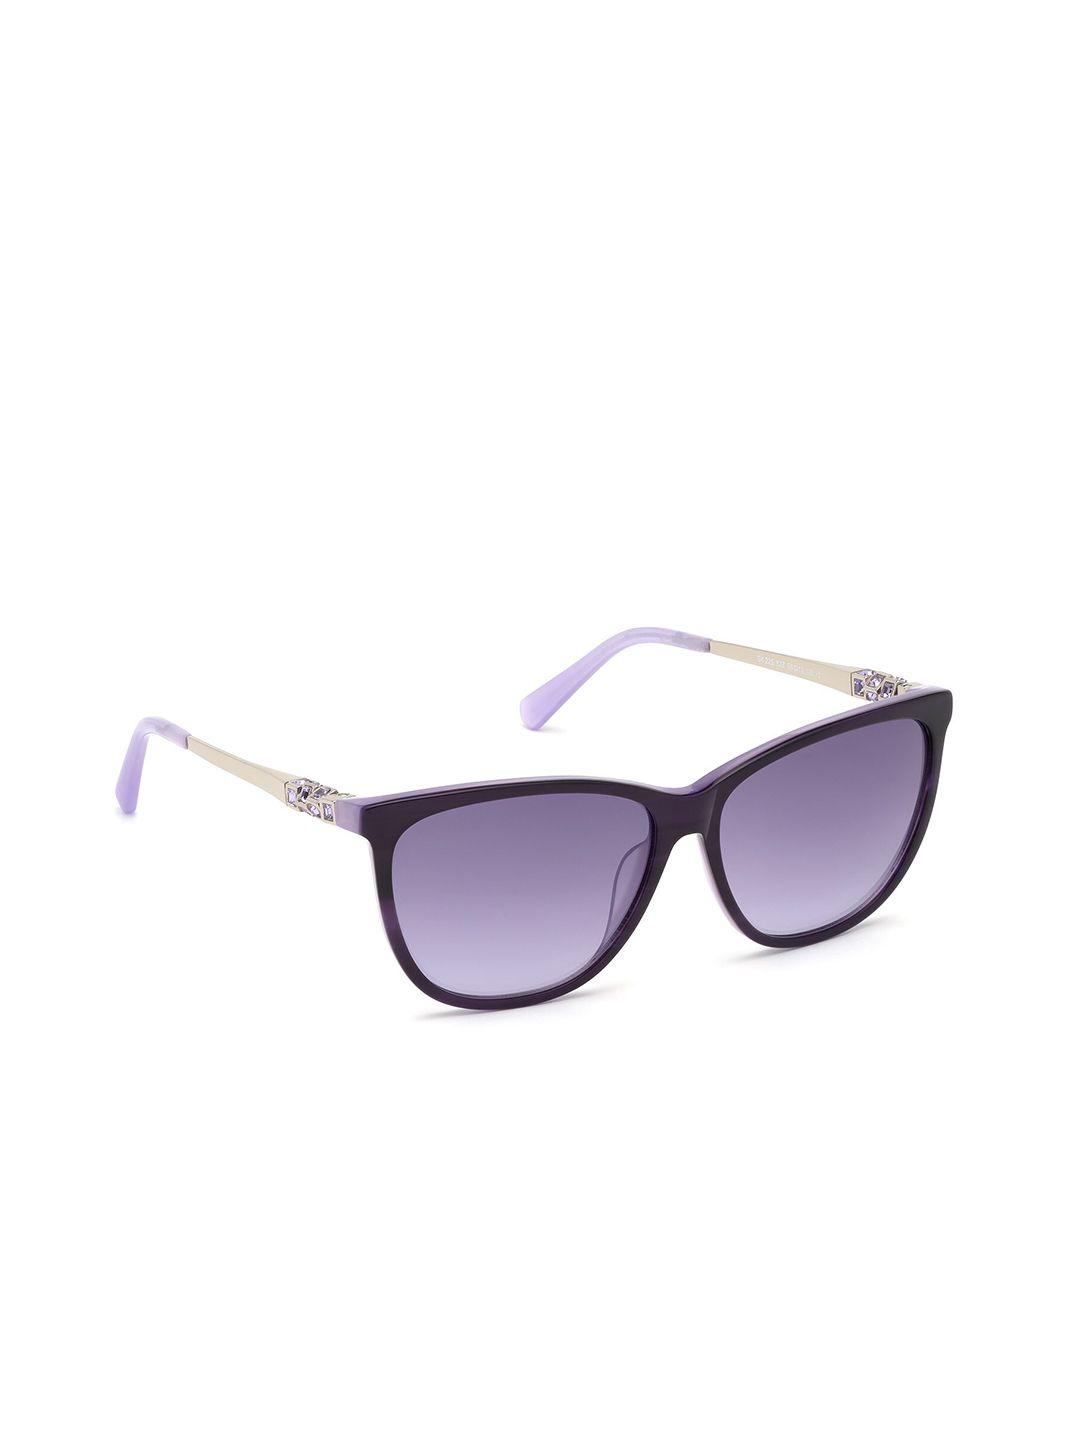 swarovski women square sunglasses with uv protected lens - sk0225 56 83z